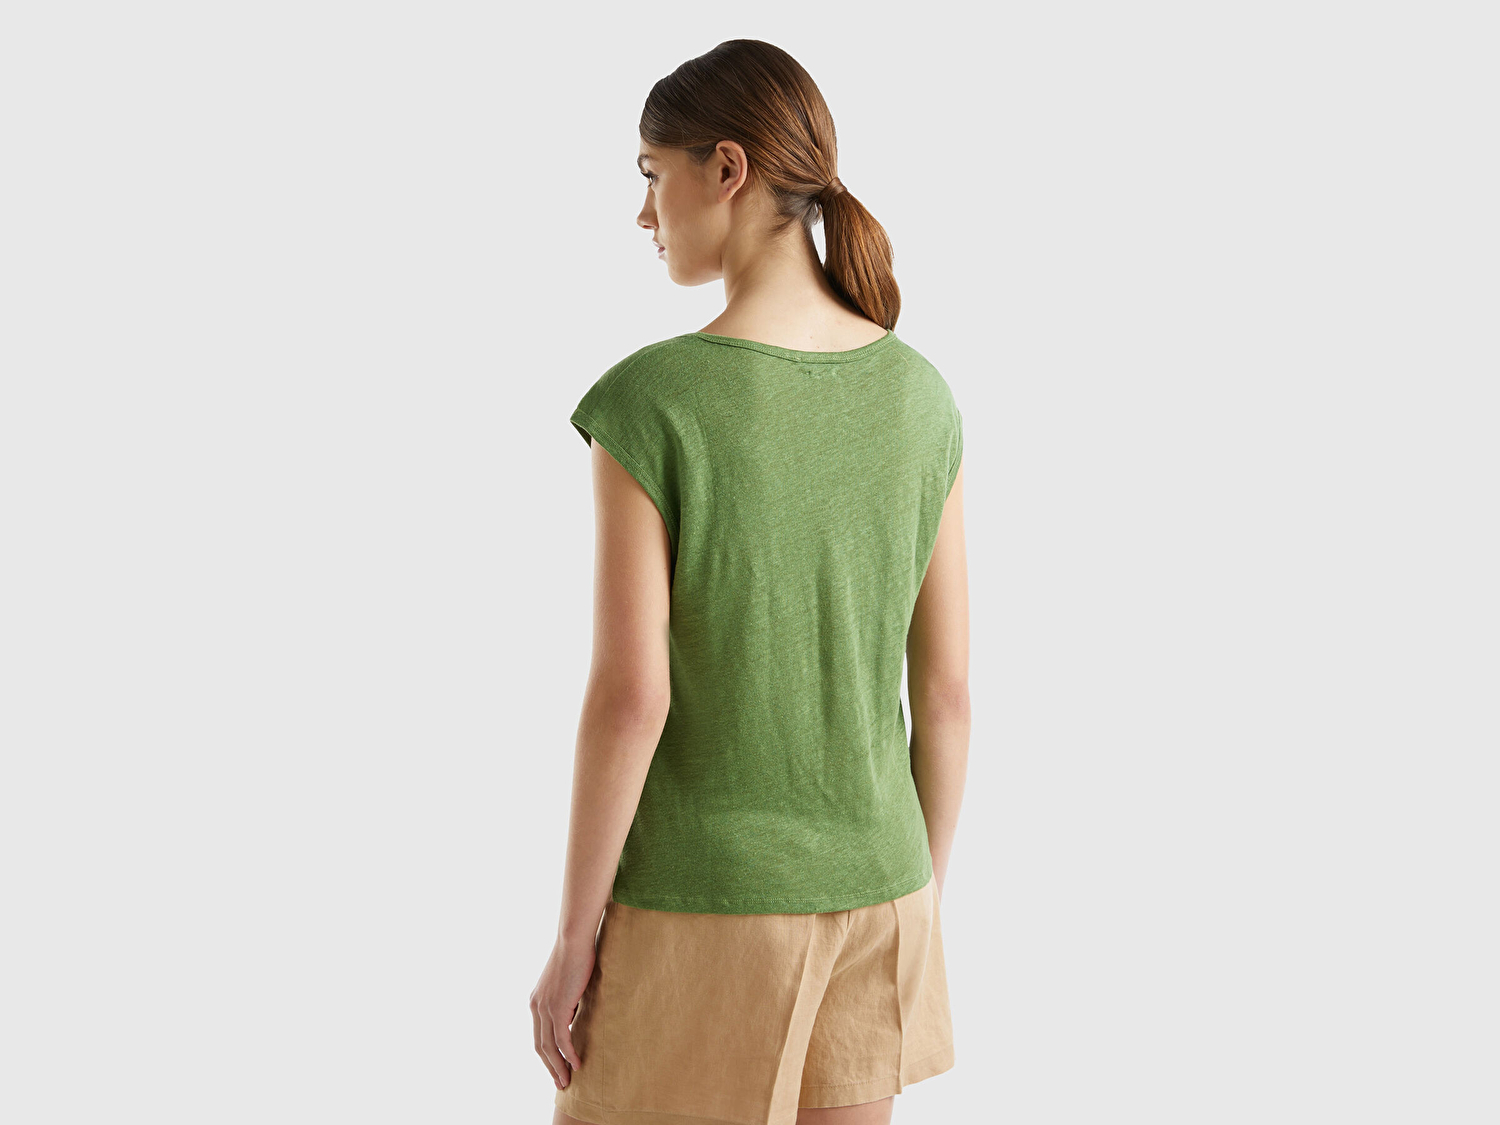 Benetton Kadın Soluk Yeşil %100 Keten Rahat Kalıp Geniş Bisiklet Yaka Kolsuz T-Shirt